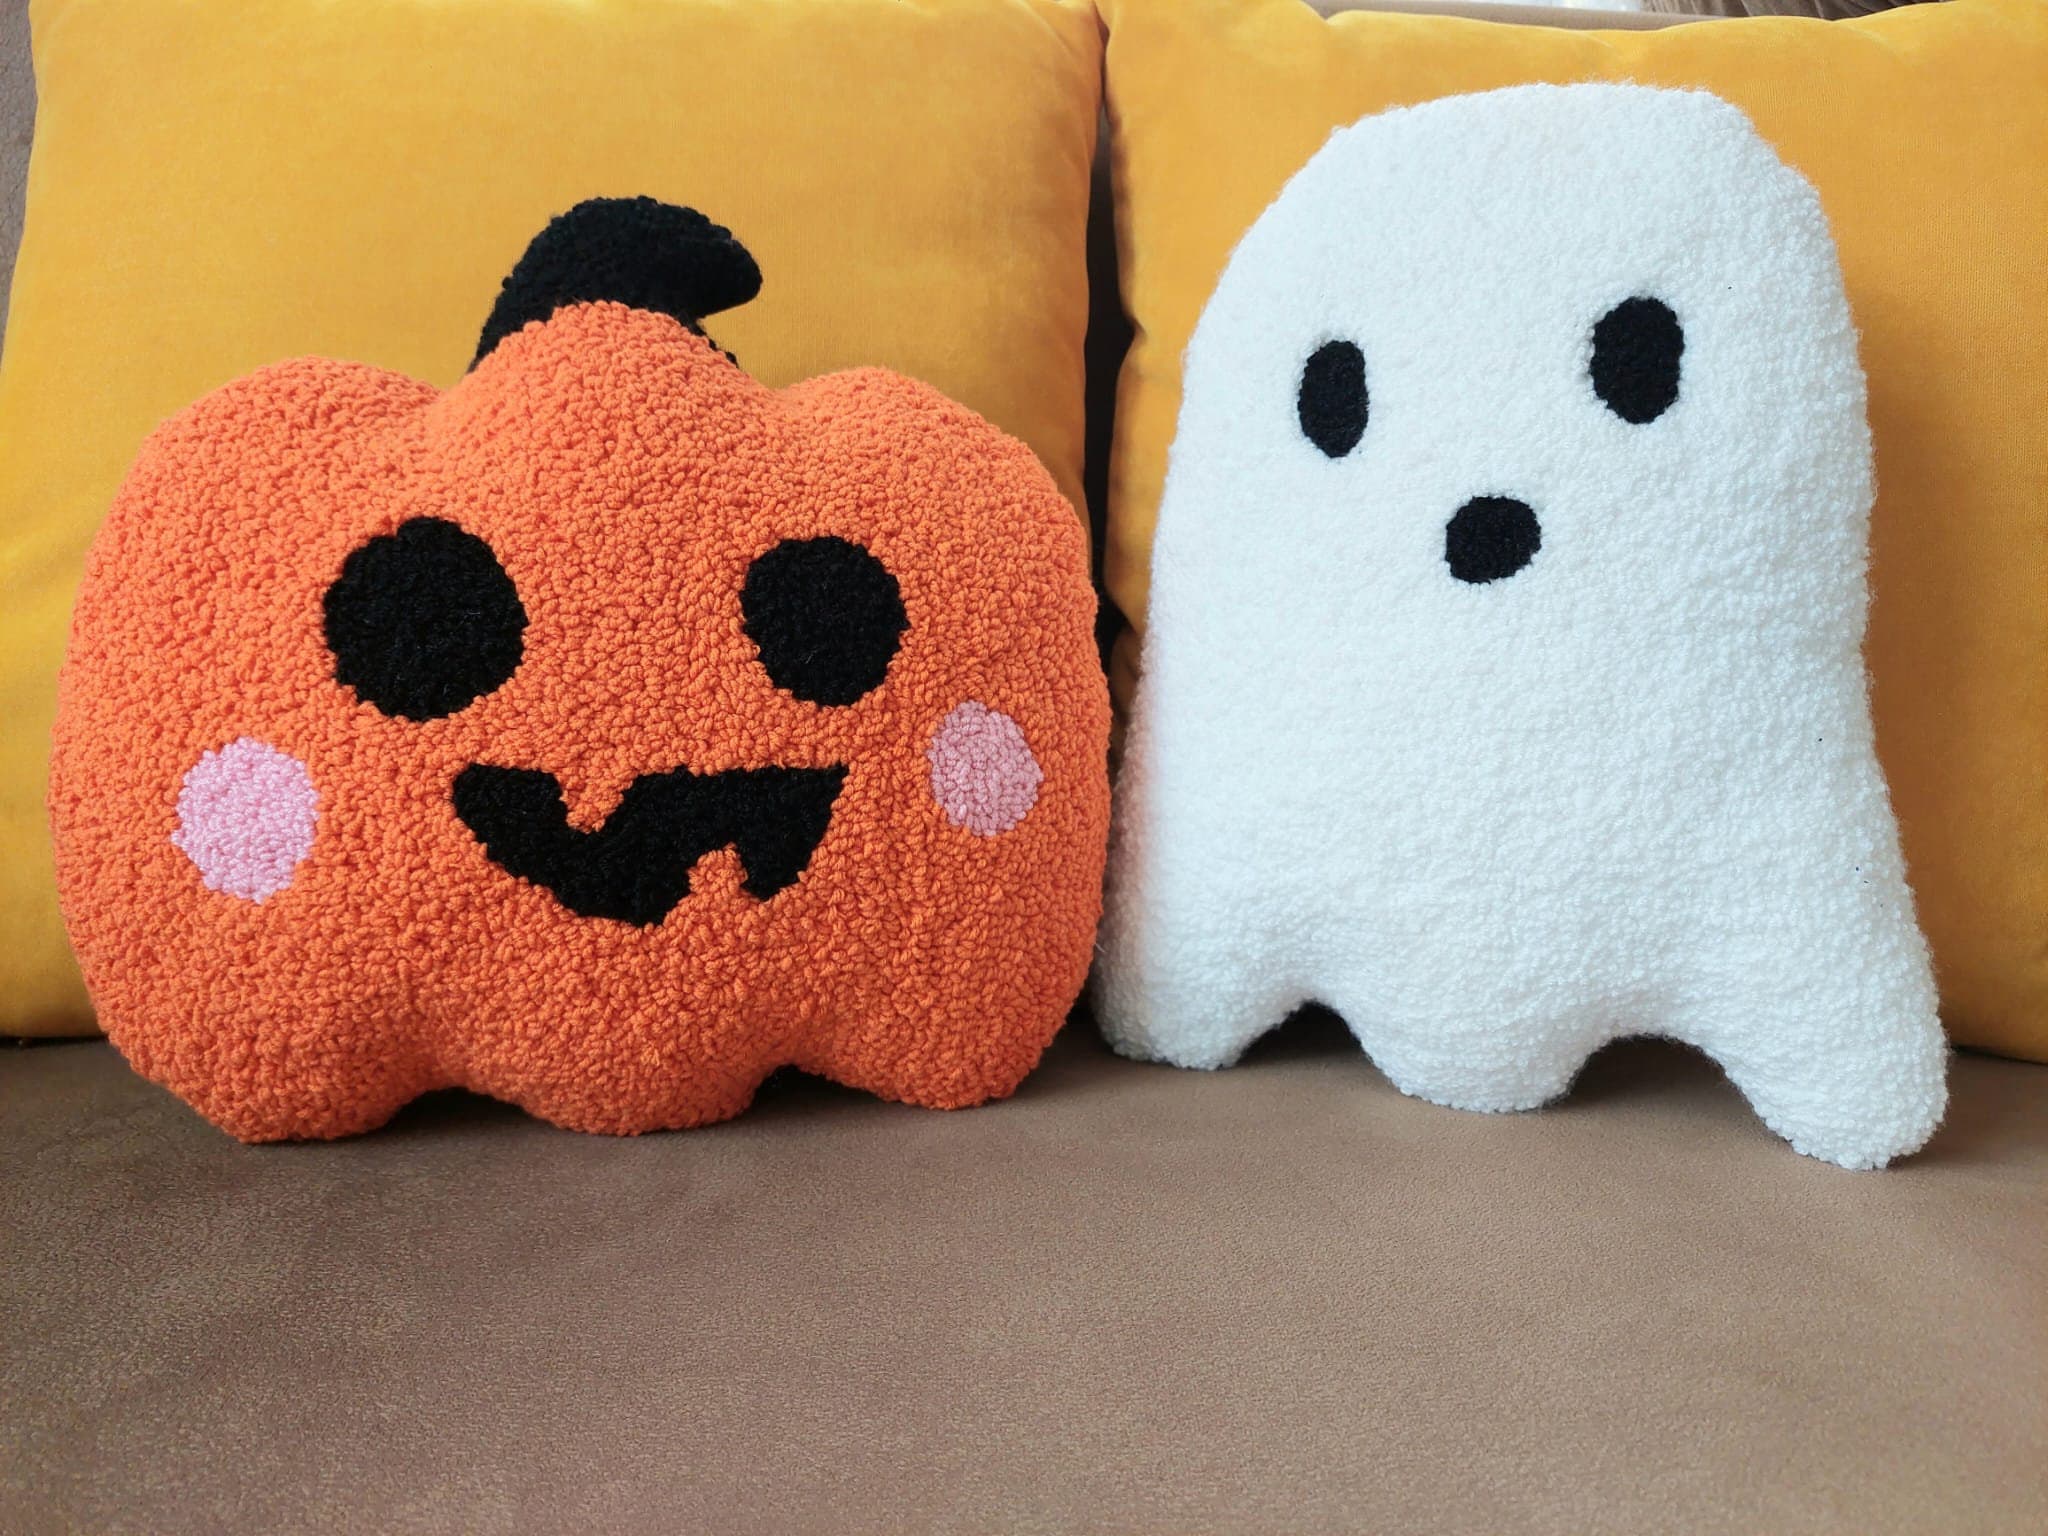 3 Pcs Halloween Pillows Cute Ghost Shaped Pillow Halloween Decorative Throw Pillow 16.5'' Stuffed Ghost Fluffy Plush Pillow Soft Cute Throw Pillow for